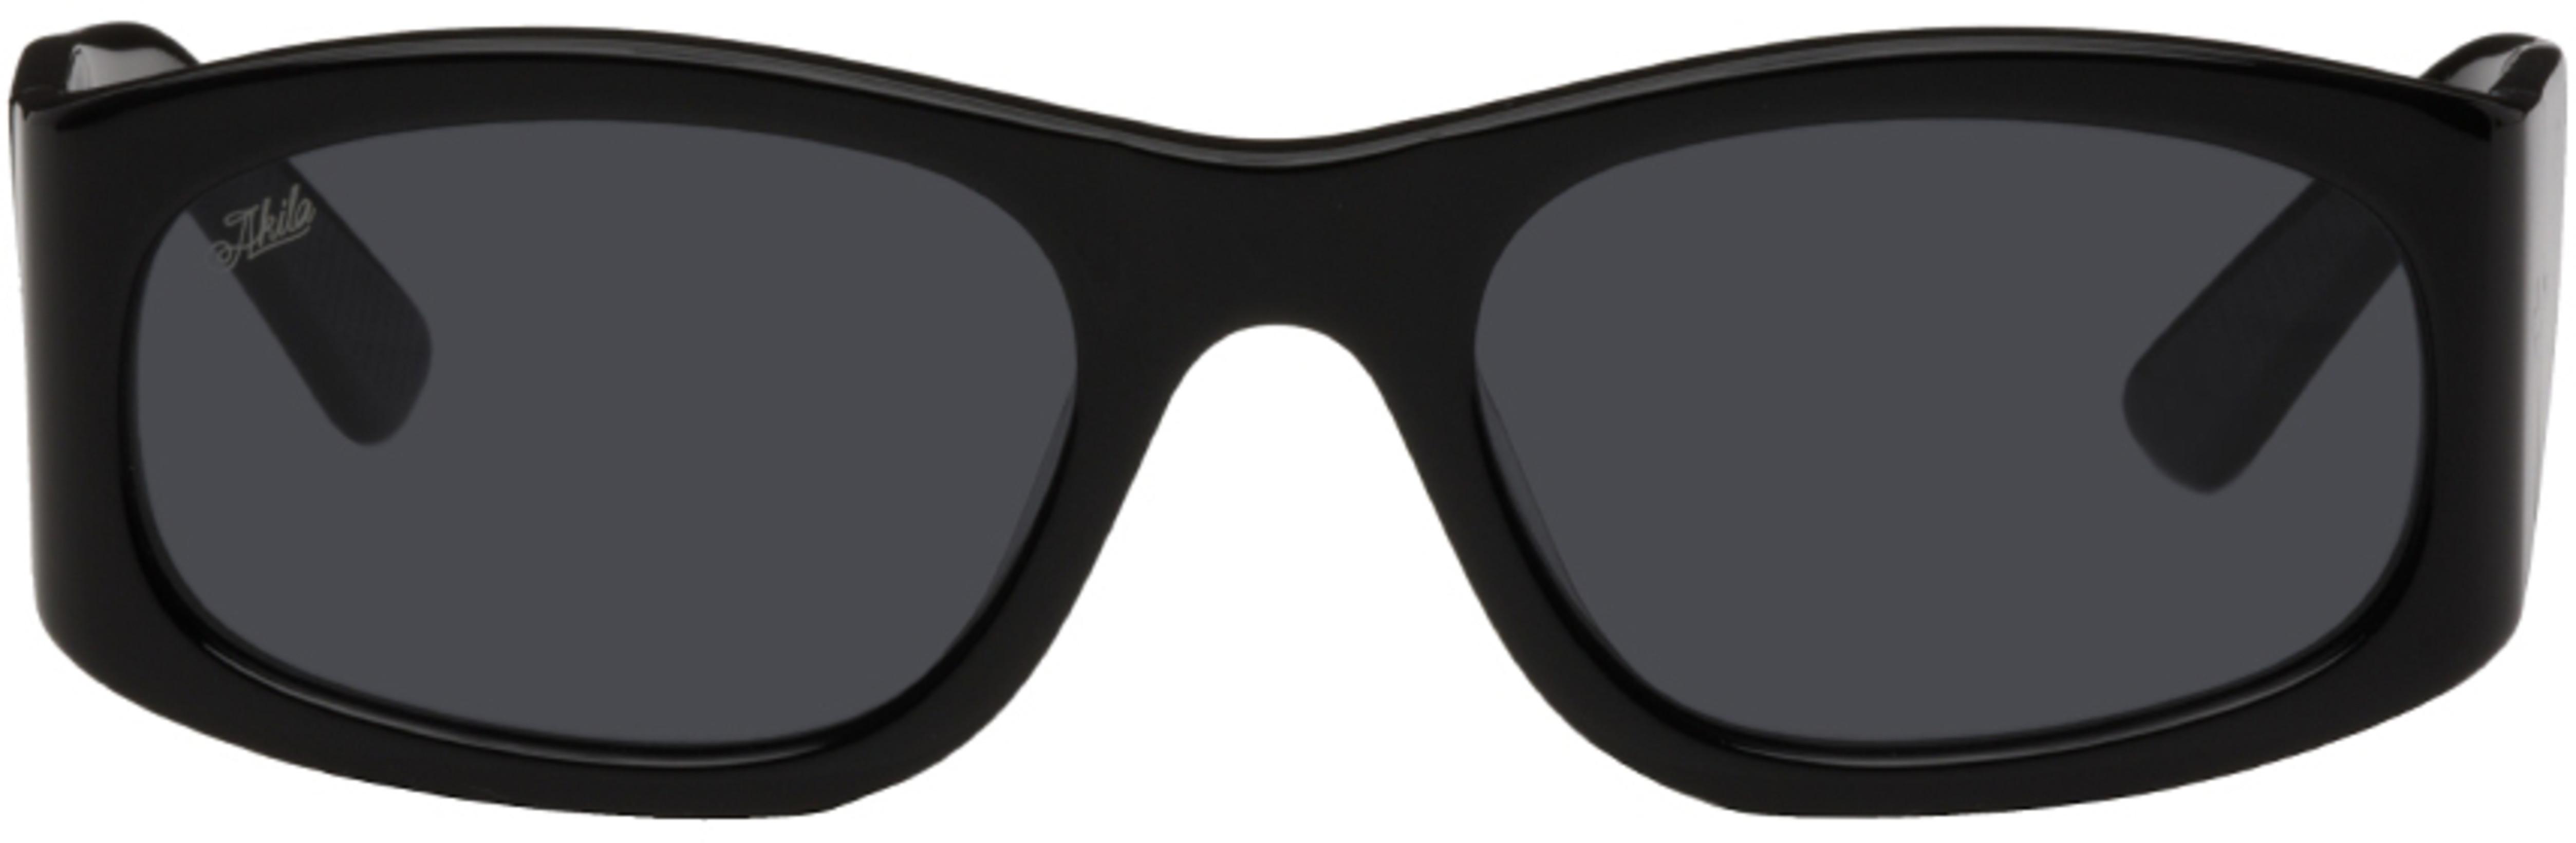 Black Eazy Sunglasses by AKILA